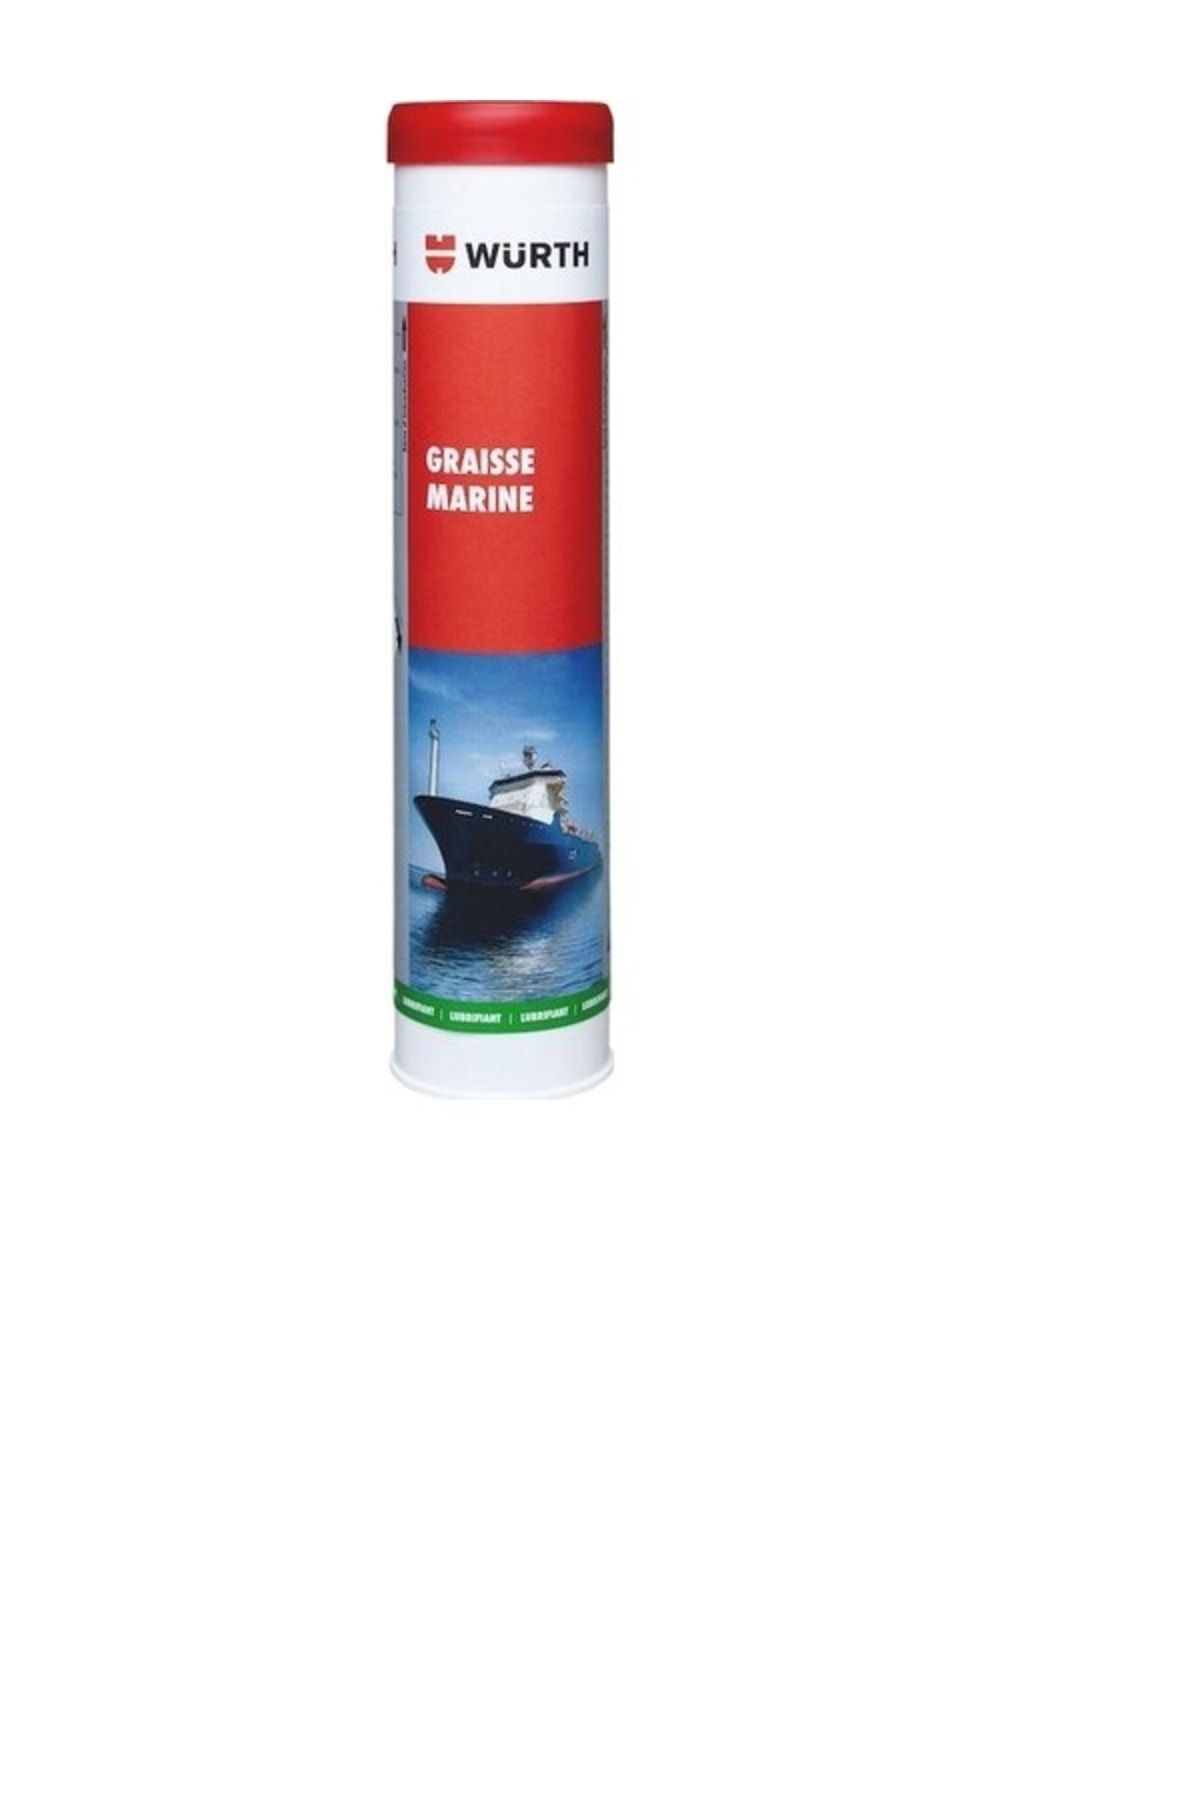 Würth Marin Gresi Denizcilik Gres Yağı 400gr (GRAİSSE MARİNE)denizcilik